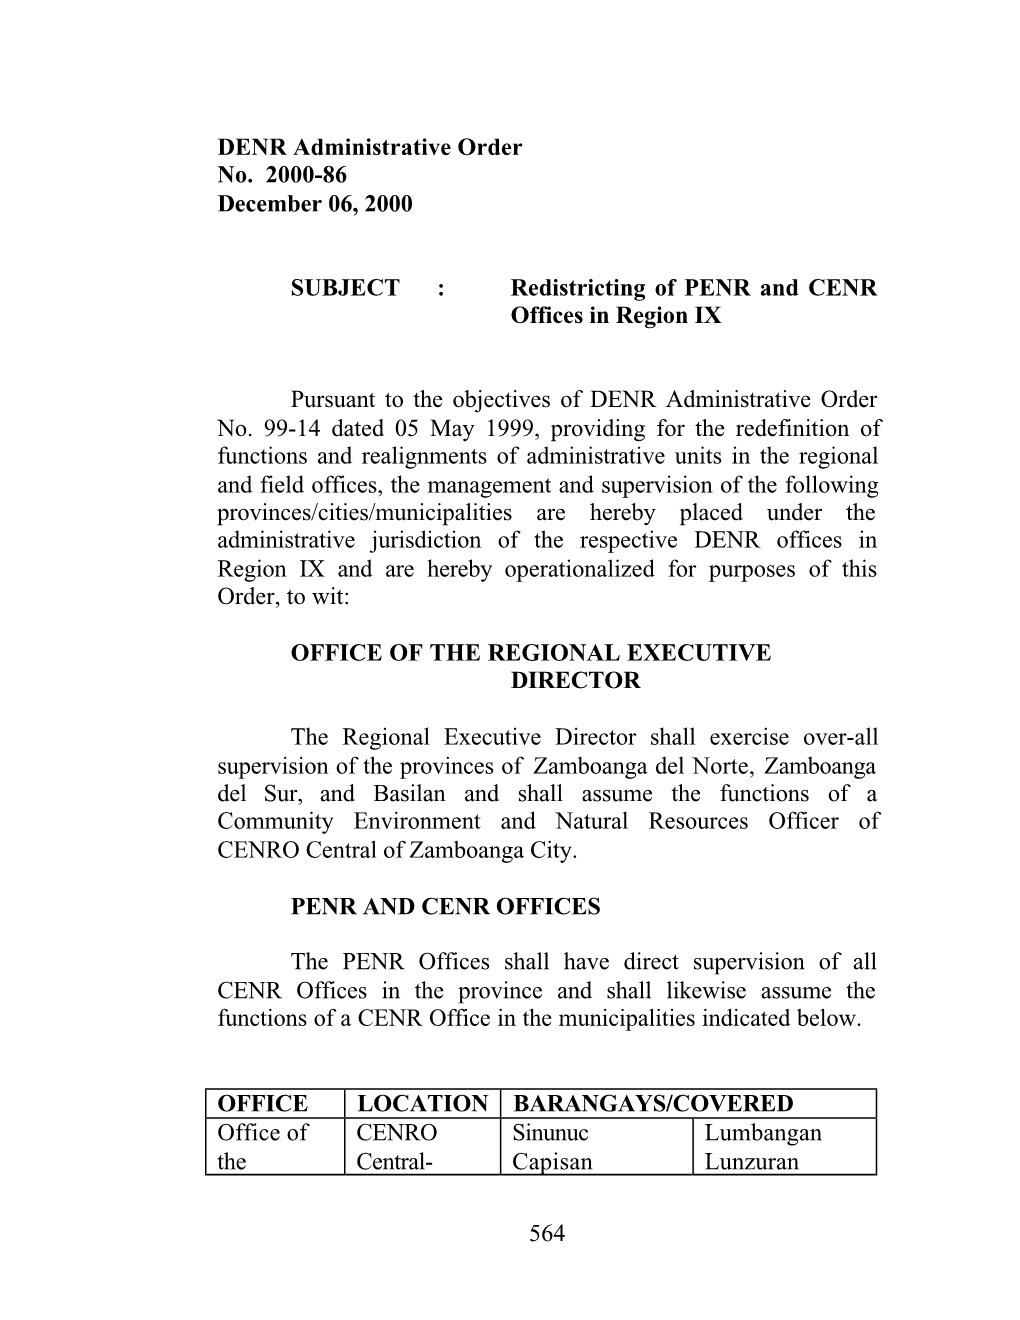 564 DENR Administrative Order No. 2000-86 December 06, 2000